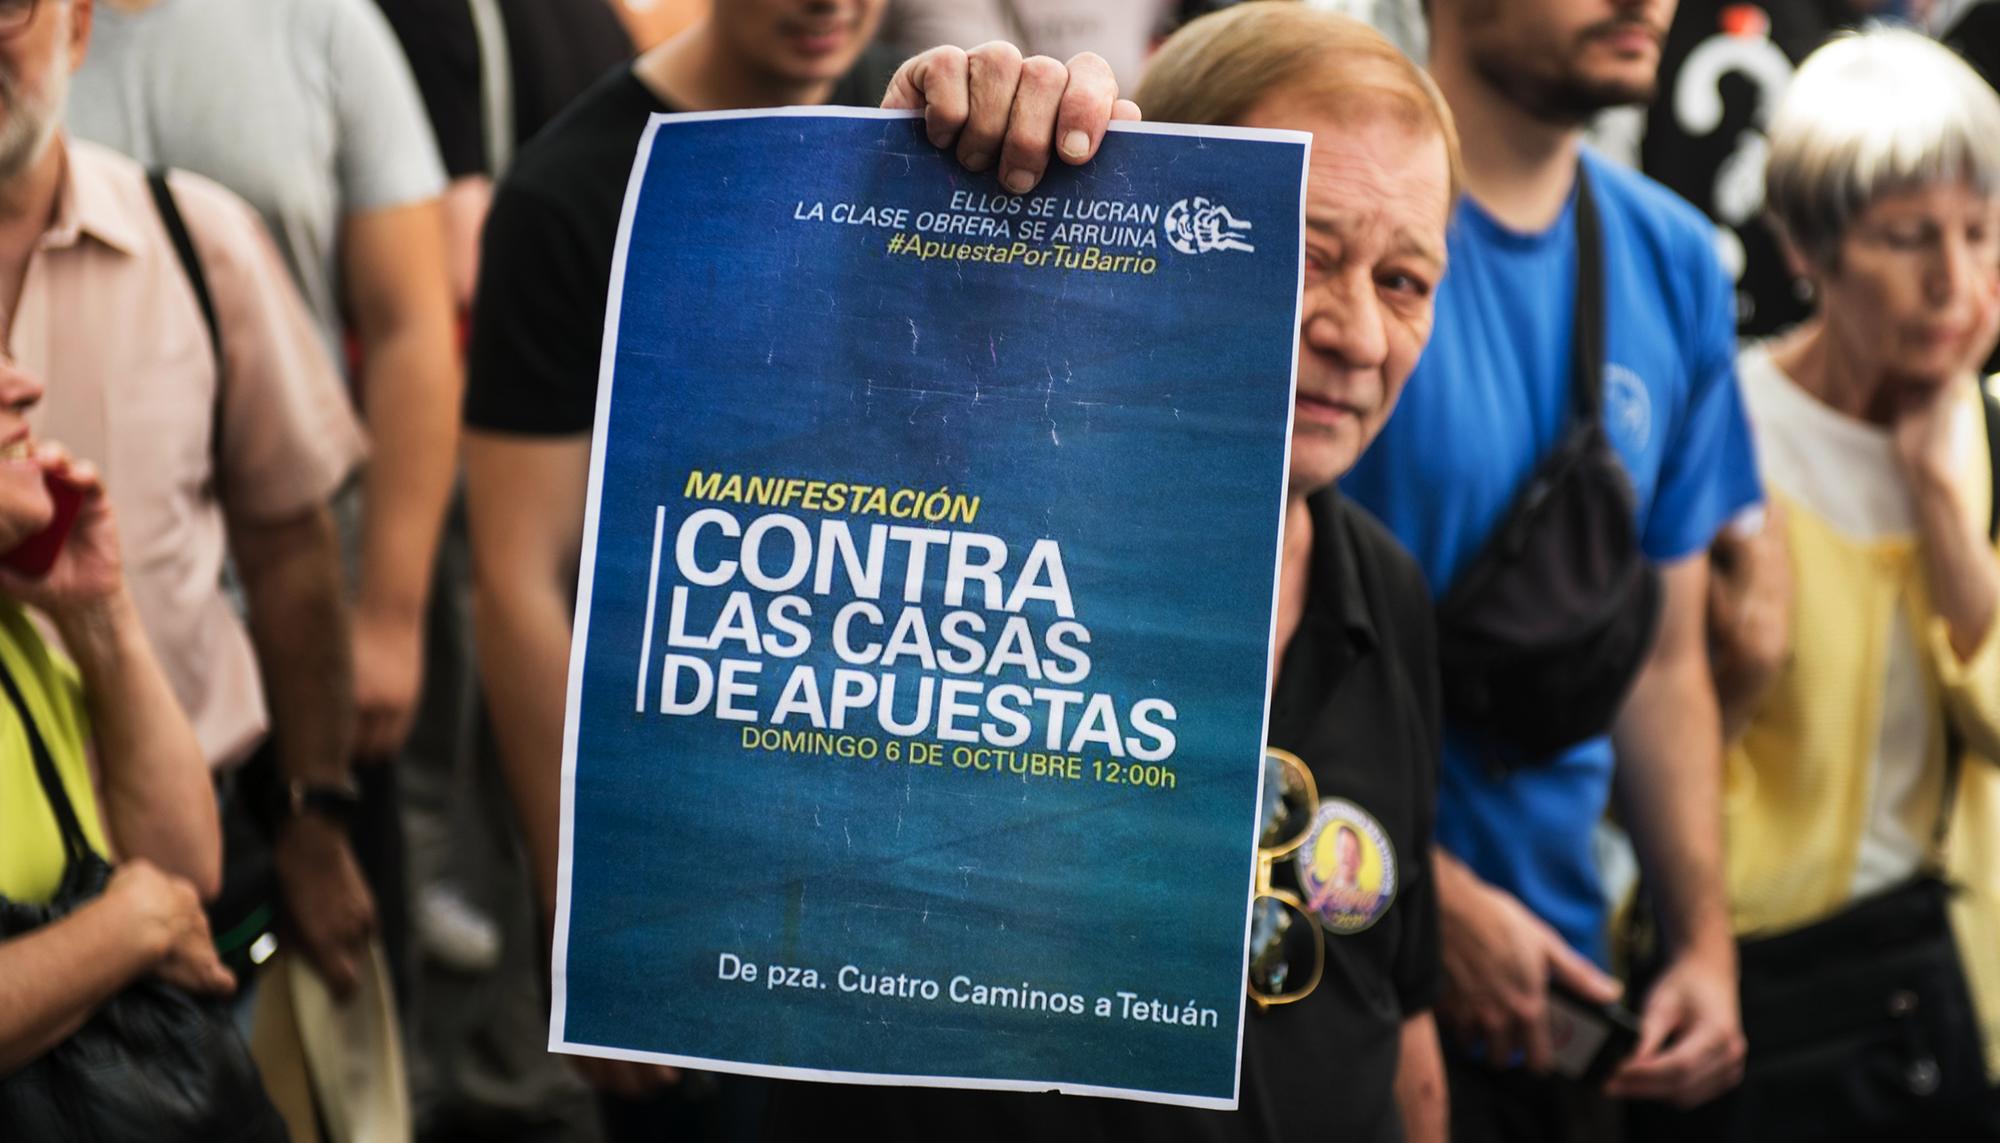 Manifestacion contra las casa de apuestas en el barrio de Tetuan, Madrid 1